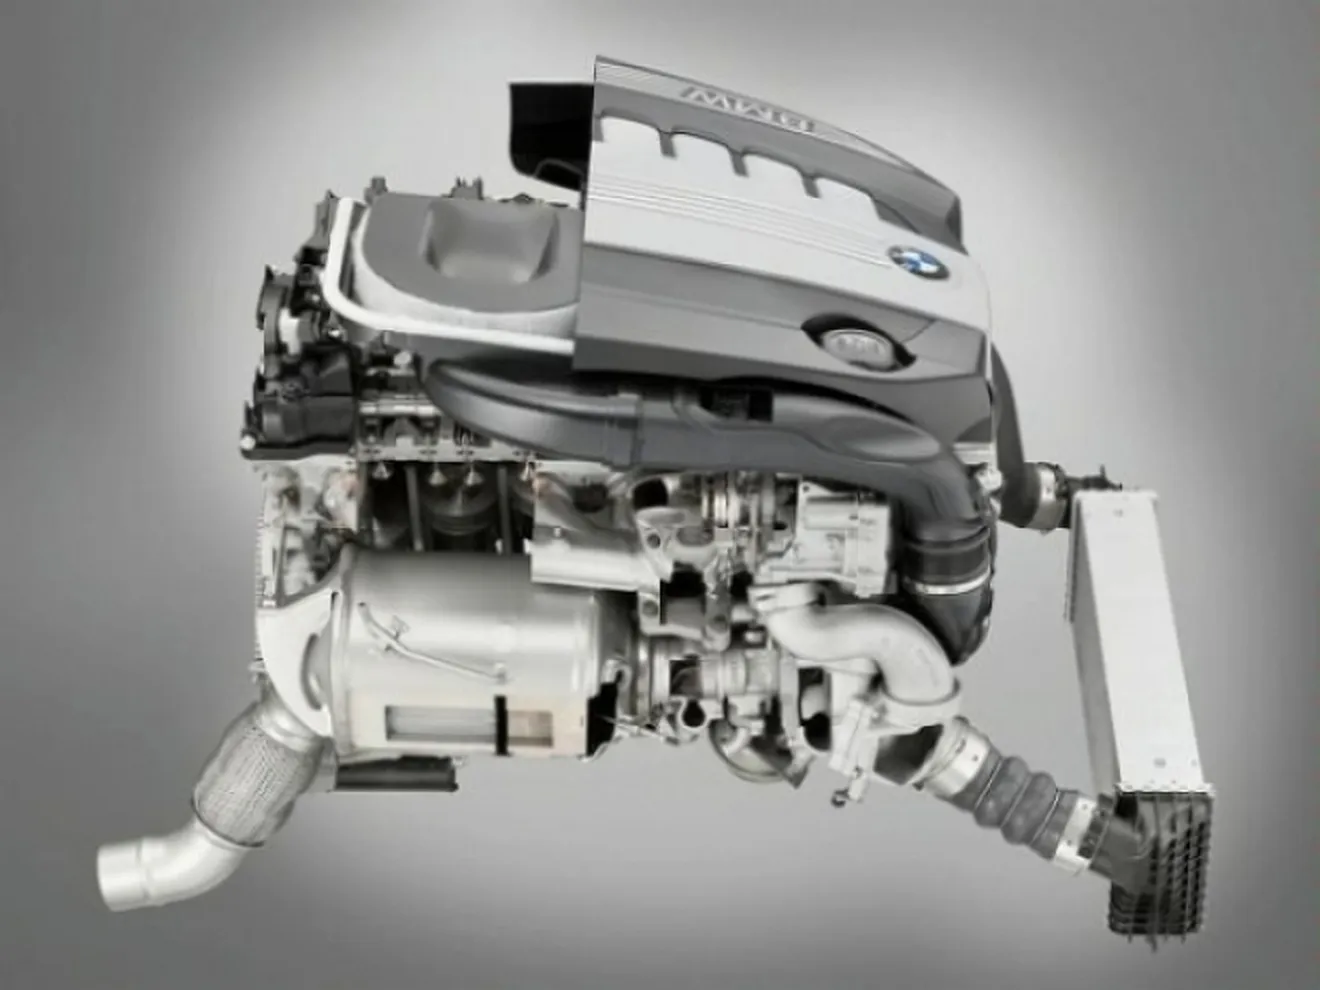 BMW mejora la potencia y economía de su motores diesel 3.0 litros doble turbo y gasolina mono turbo